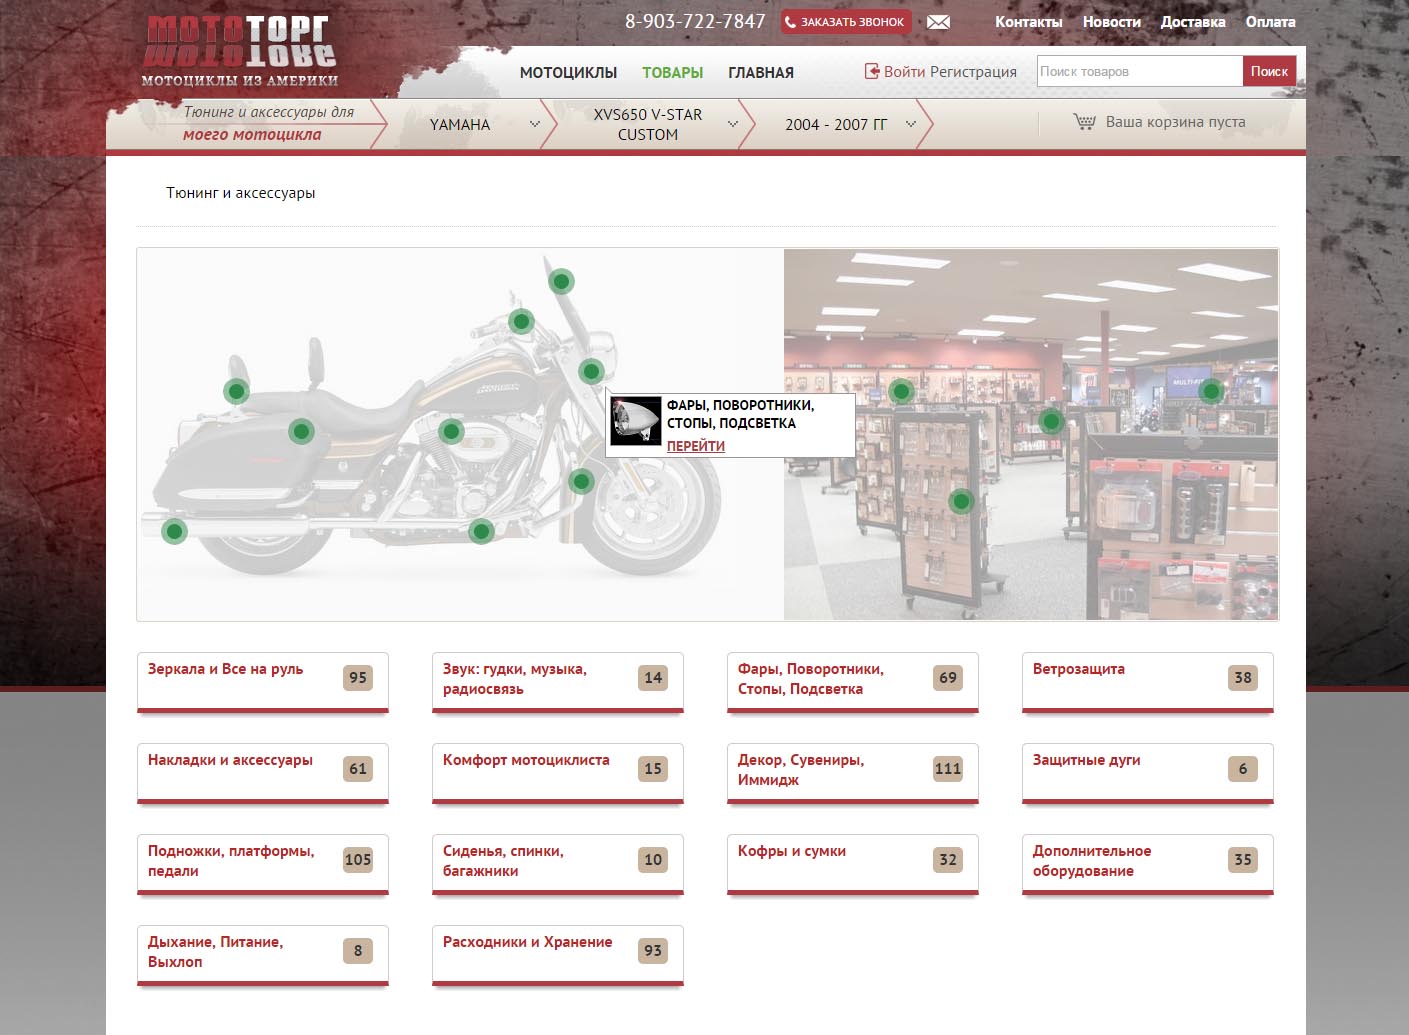 интернет магазин тюнинга и аксессуаров для мотоциклов